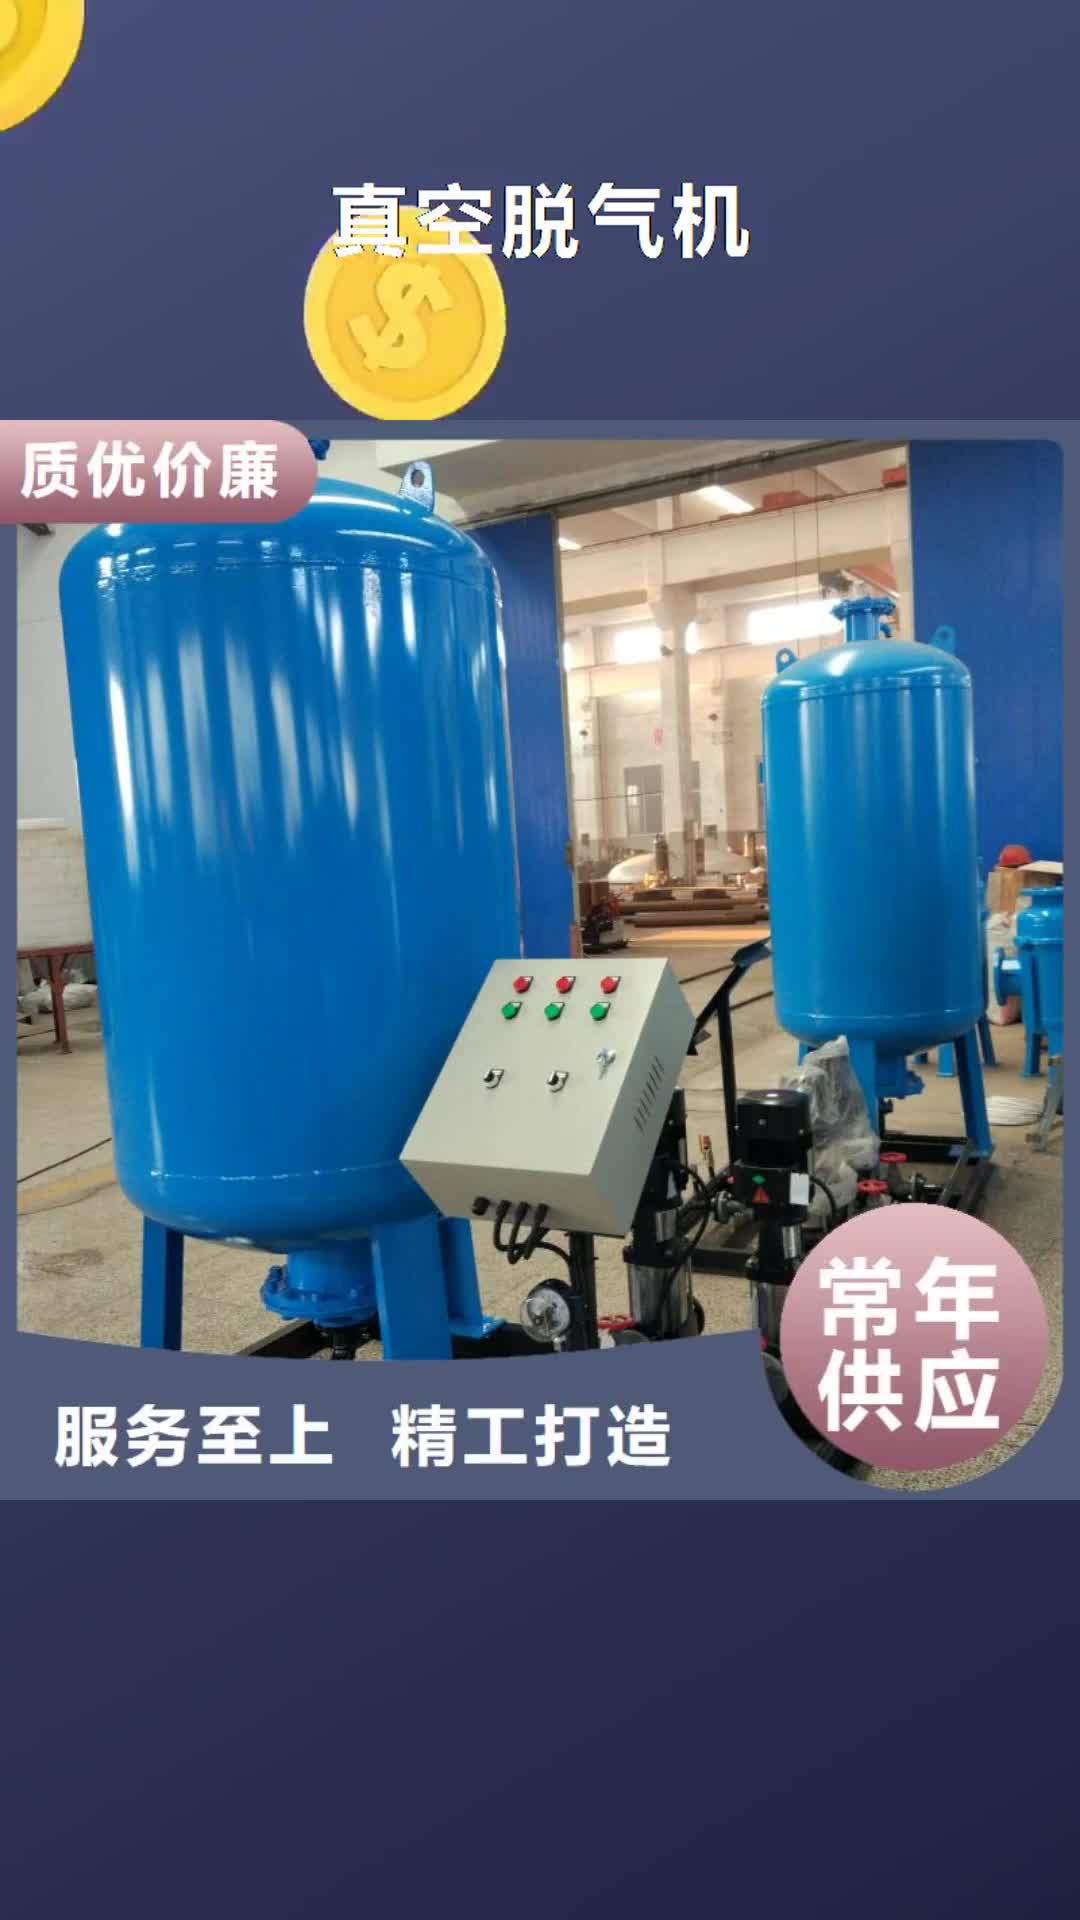 上海【真空脱气机】,软化水装置您身边的厂家